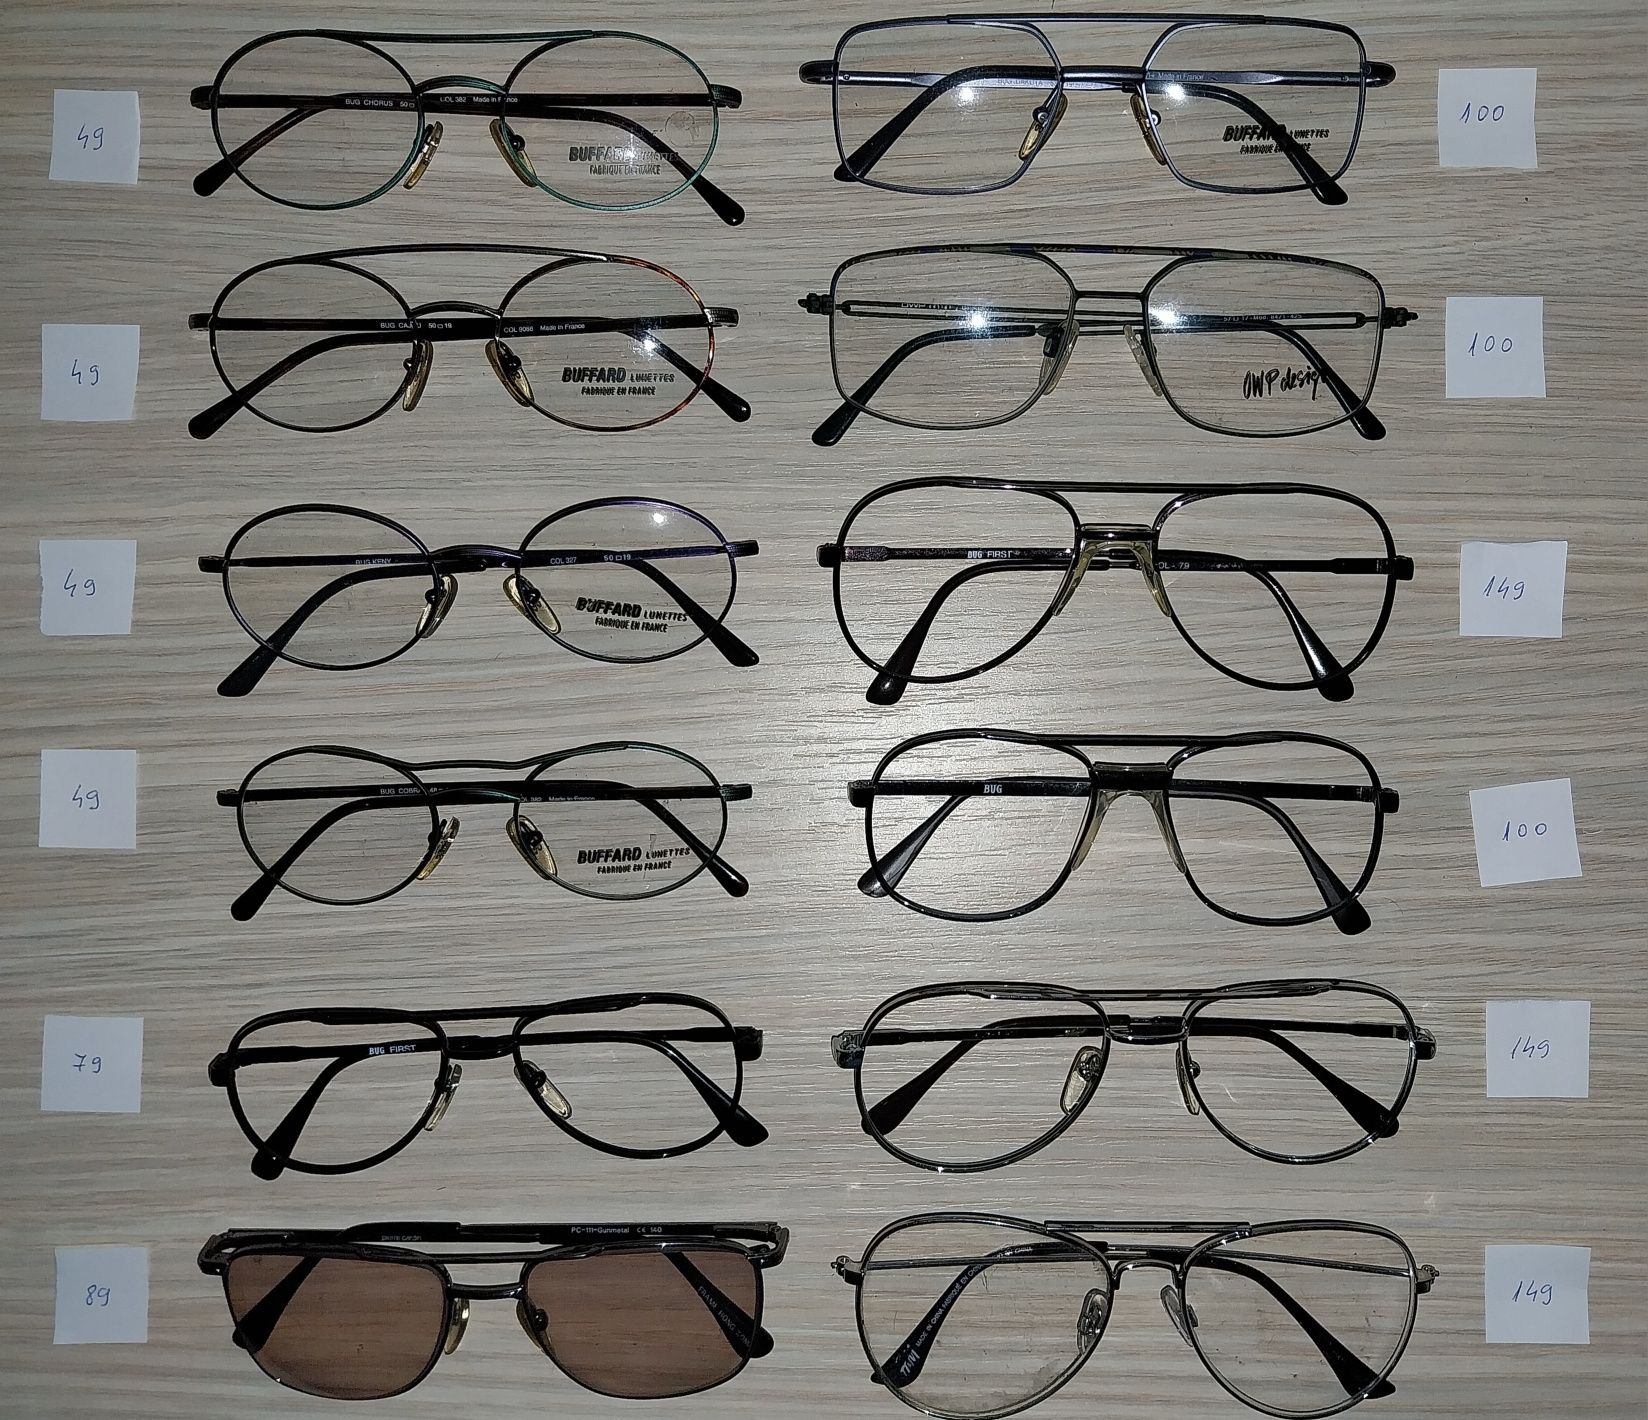 Rame ochelari ,originali/autentici, France/Germany (vedere/soare)